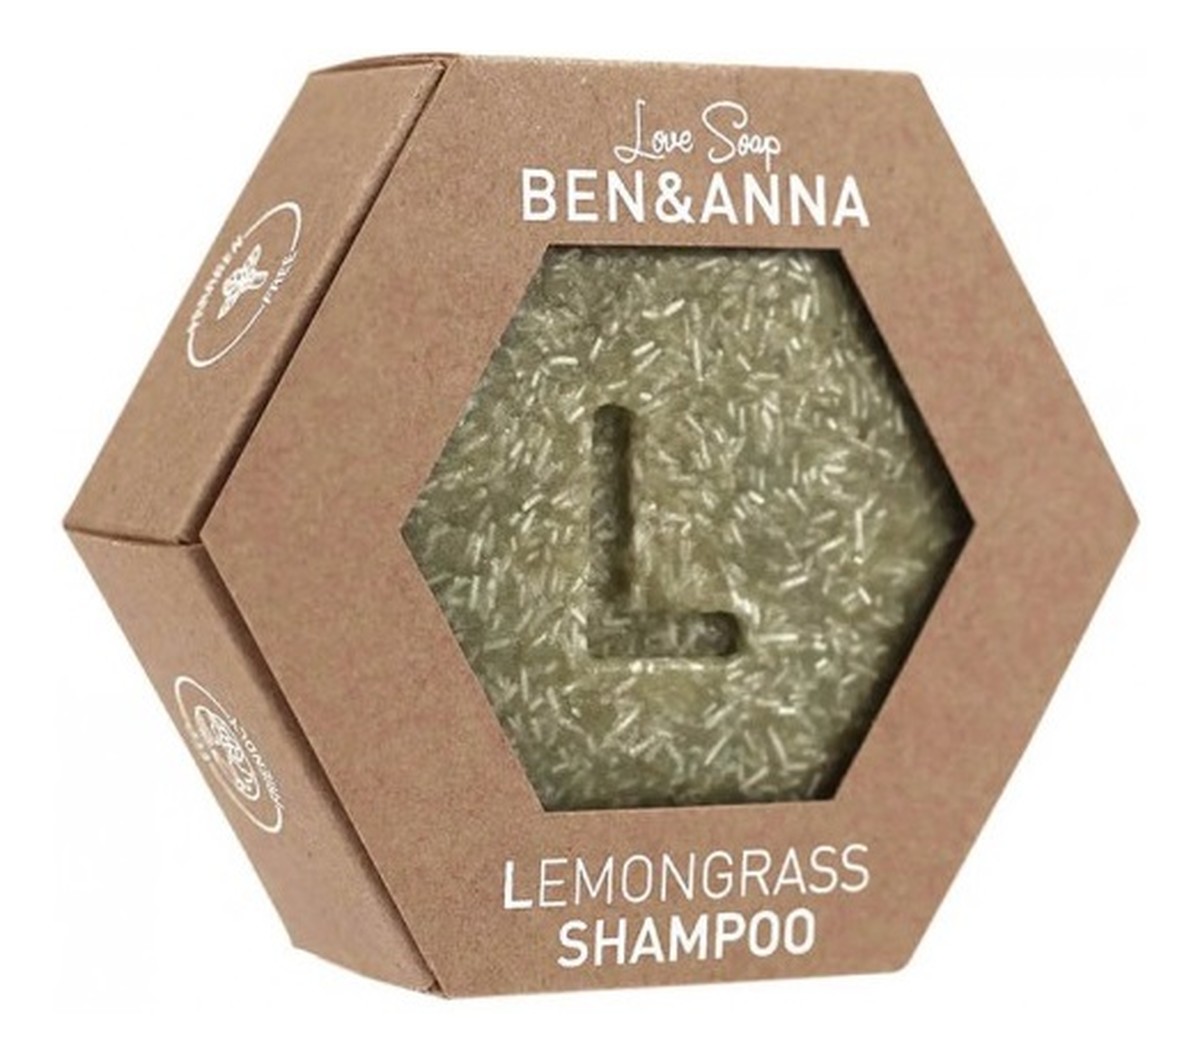 Shampoo szampon do włosów w kostce lemongrass